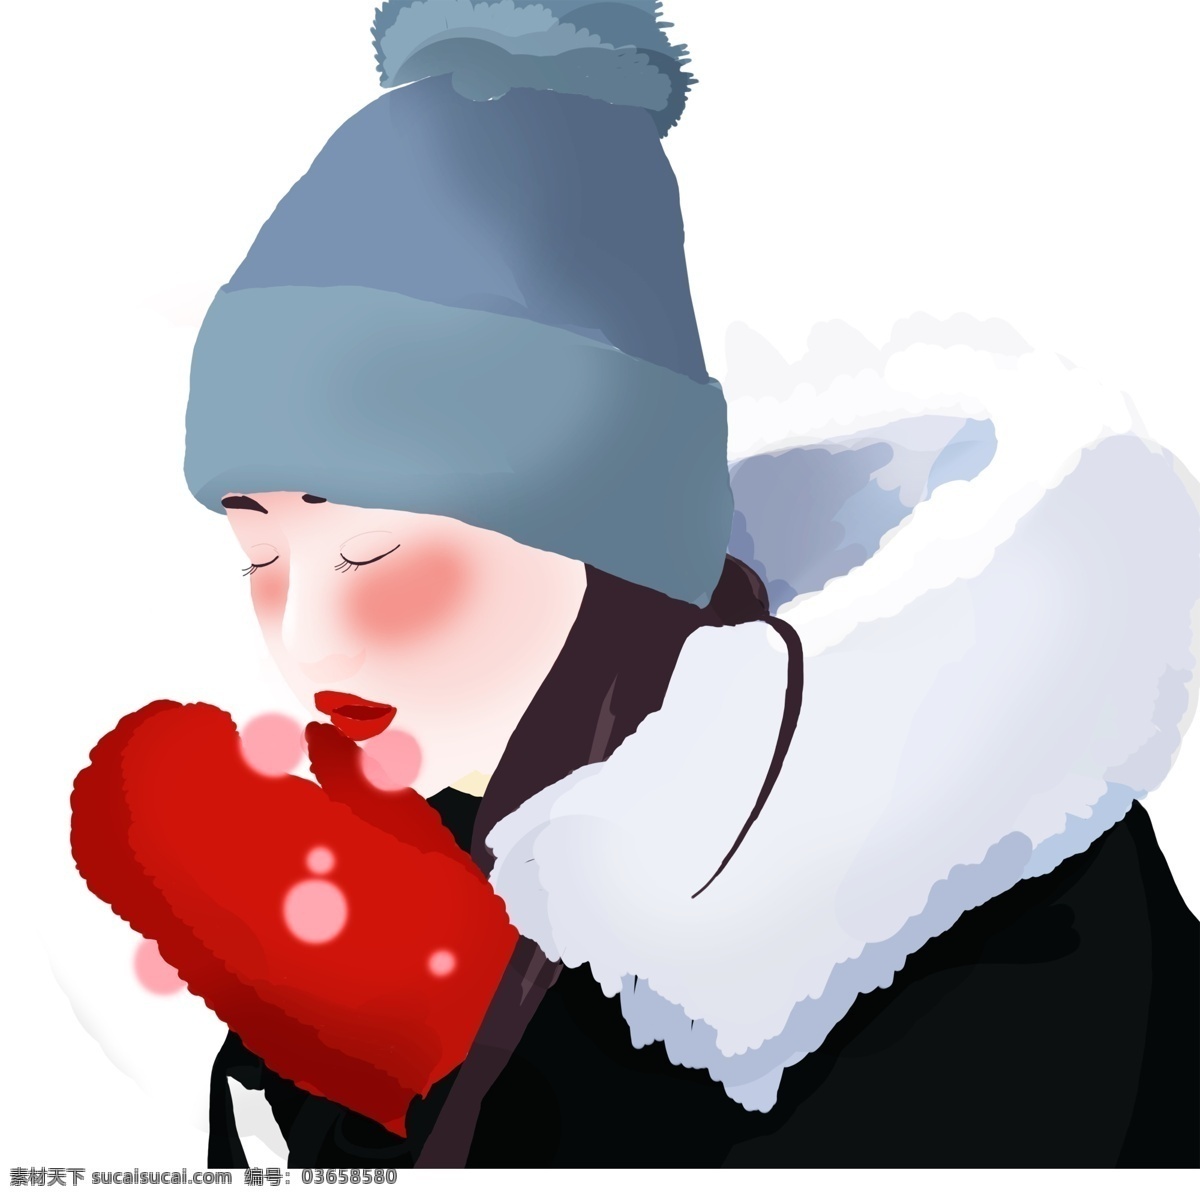 面色 红润 彩绘 小女孩 商用 元素 冬季 女孩 人物 插画设计 哈气 女生 psd设计